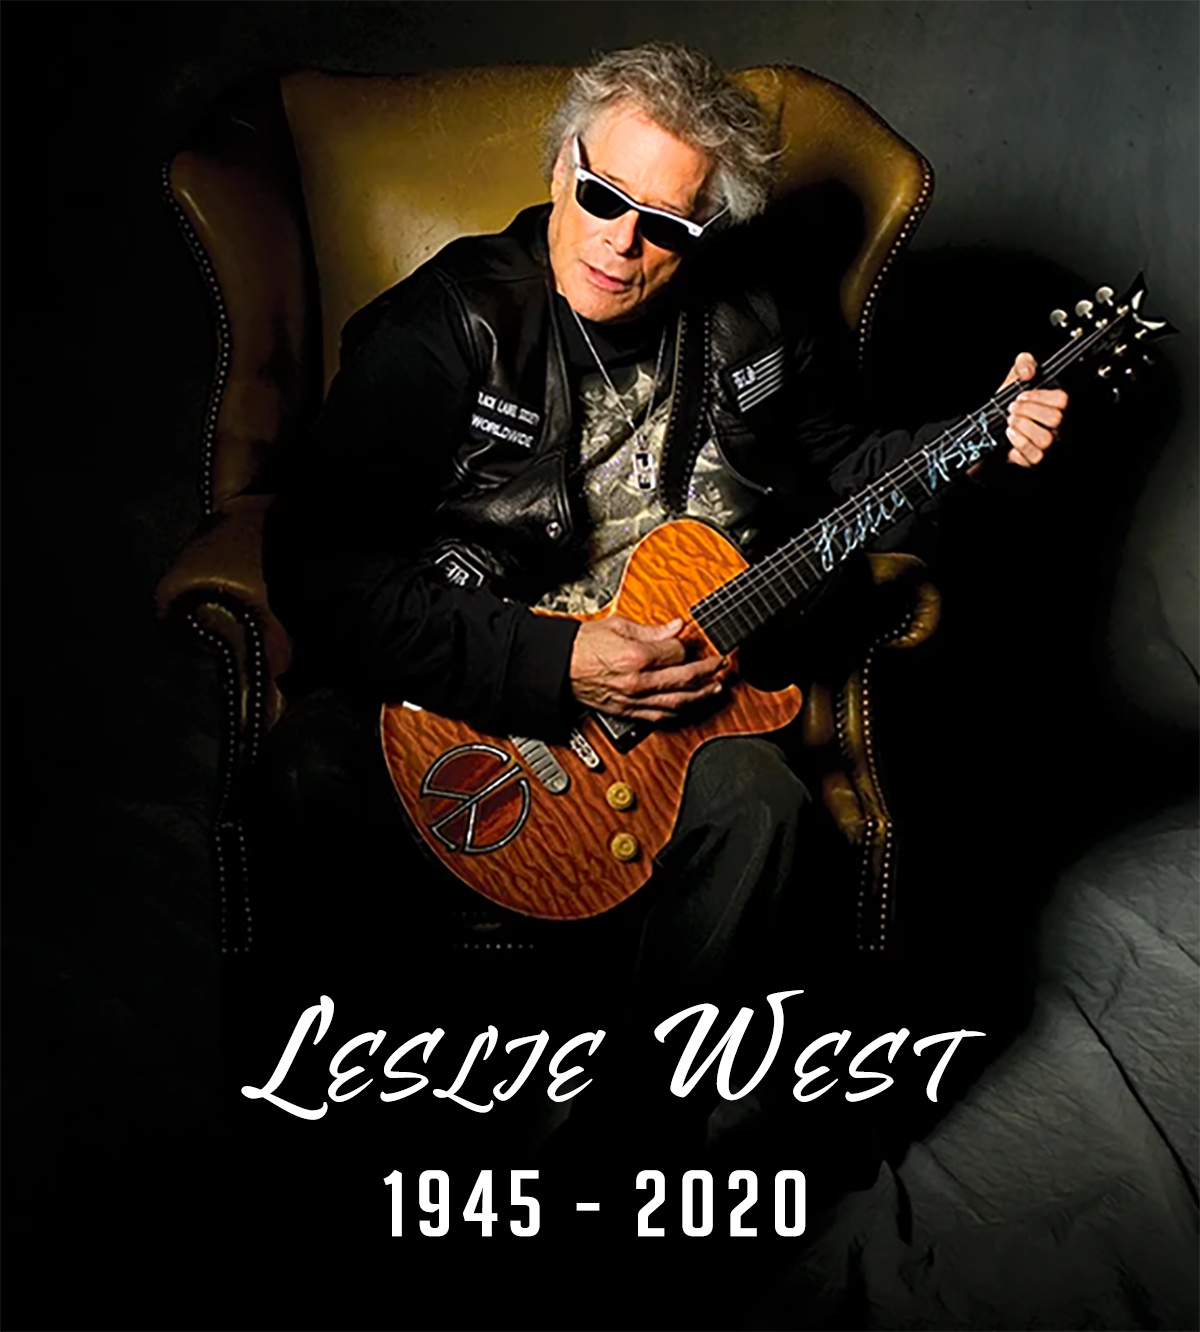 R.I.P. Leslie West 1945-2020